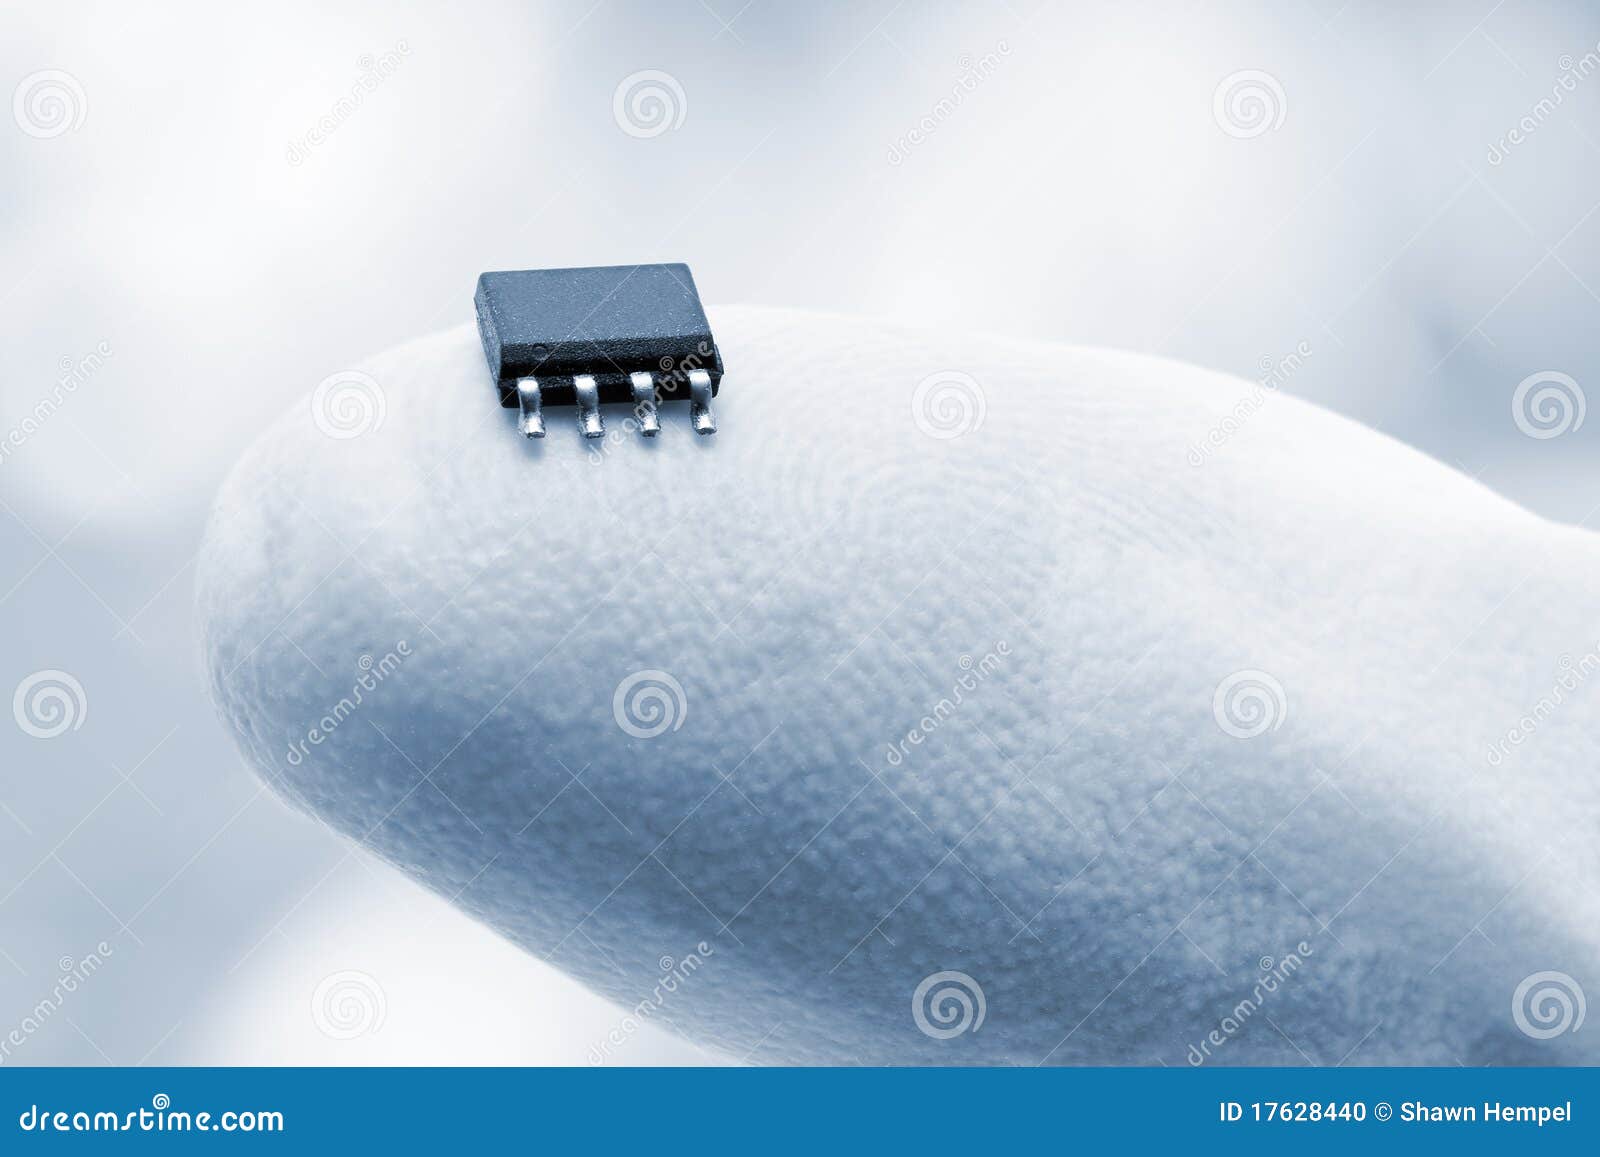 microchip on a fingertip